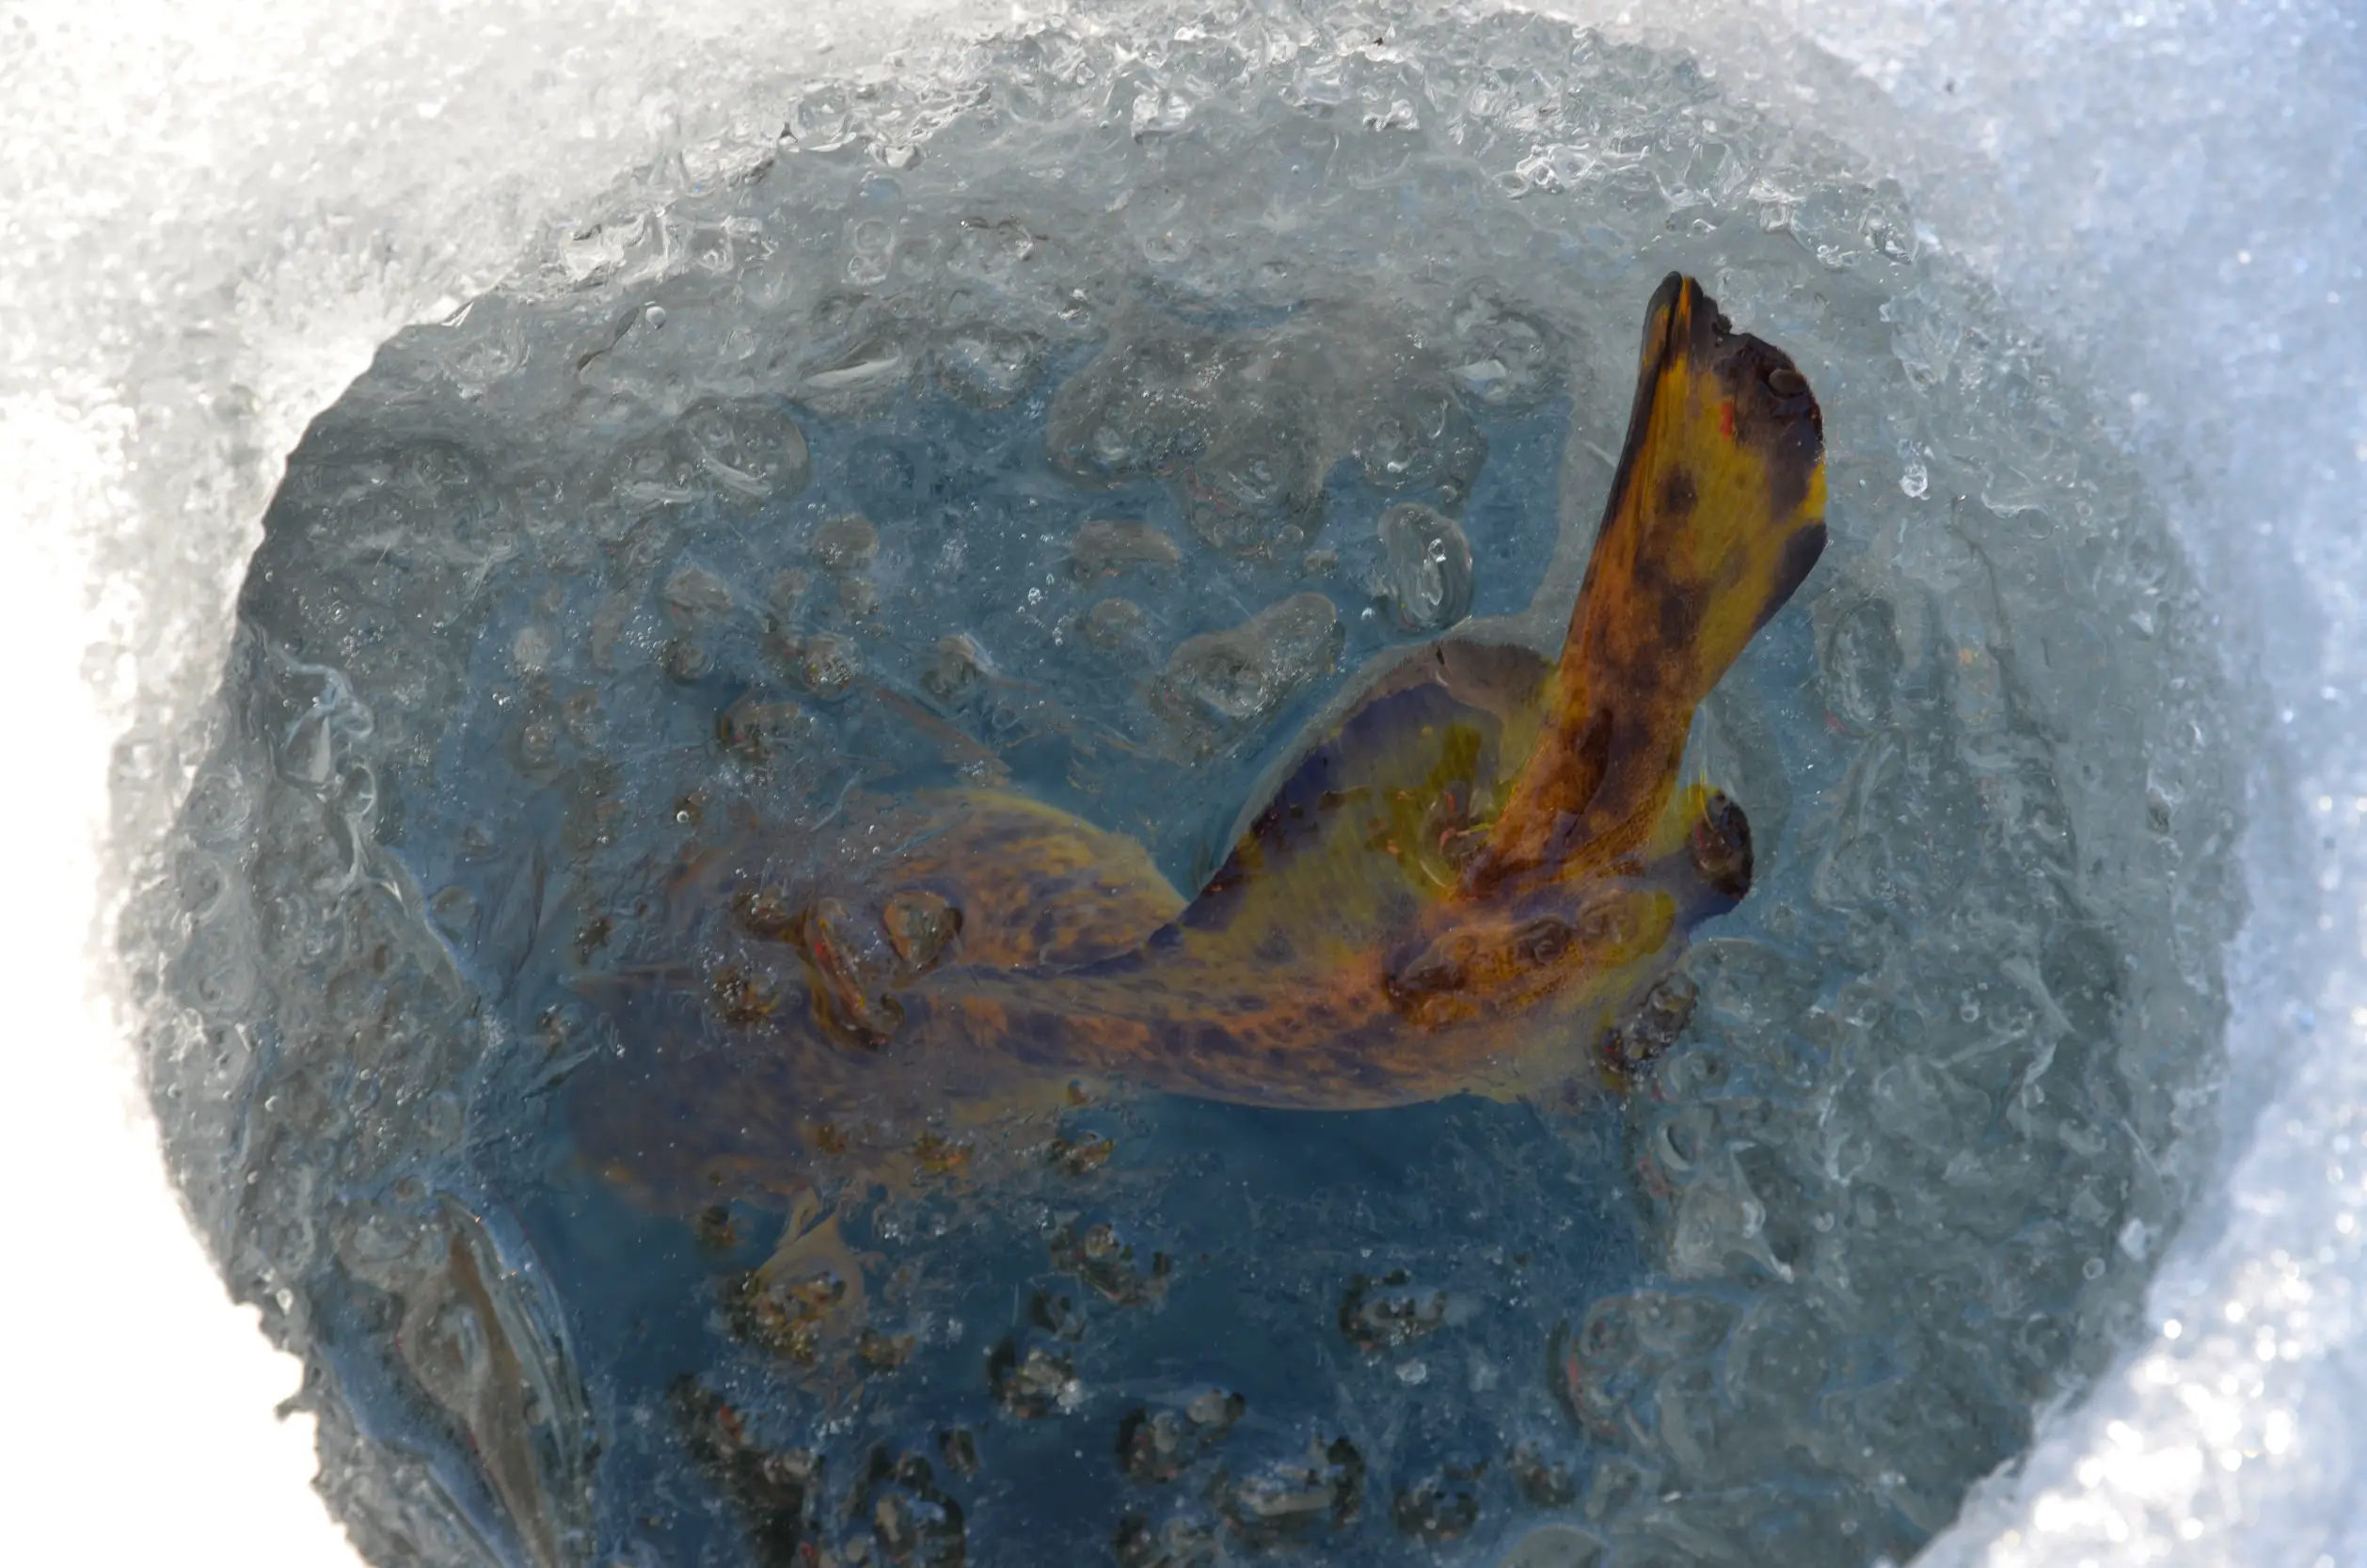 Fish in frozen water